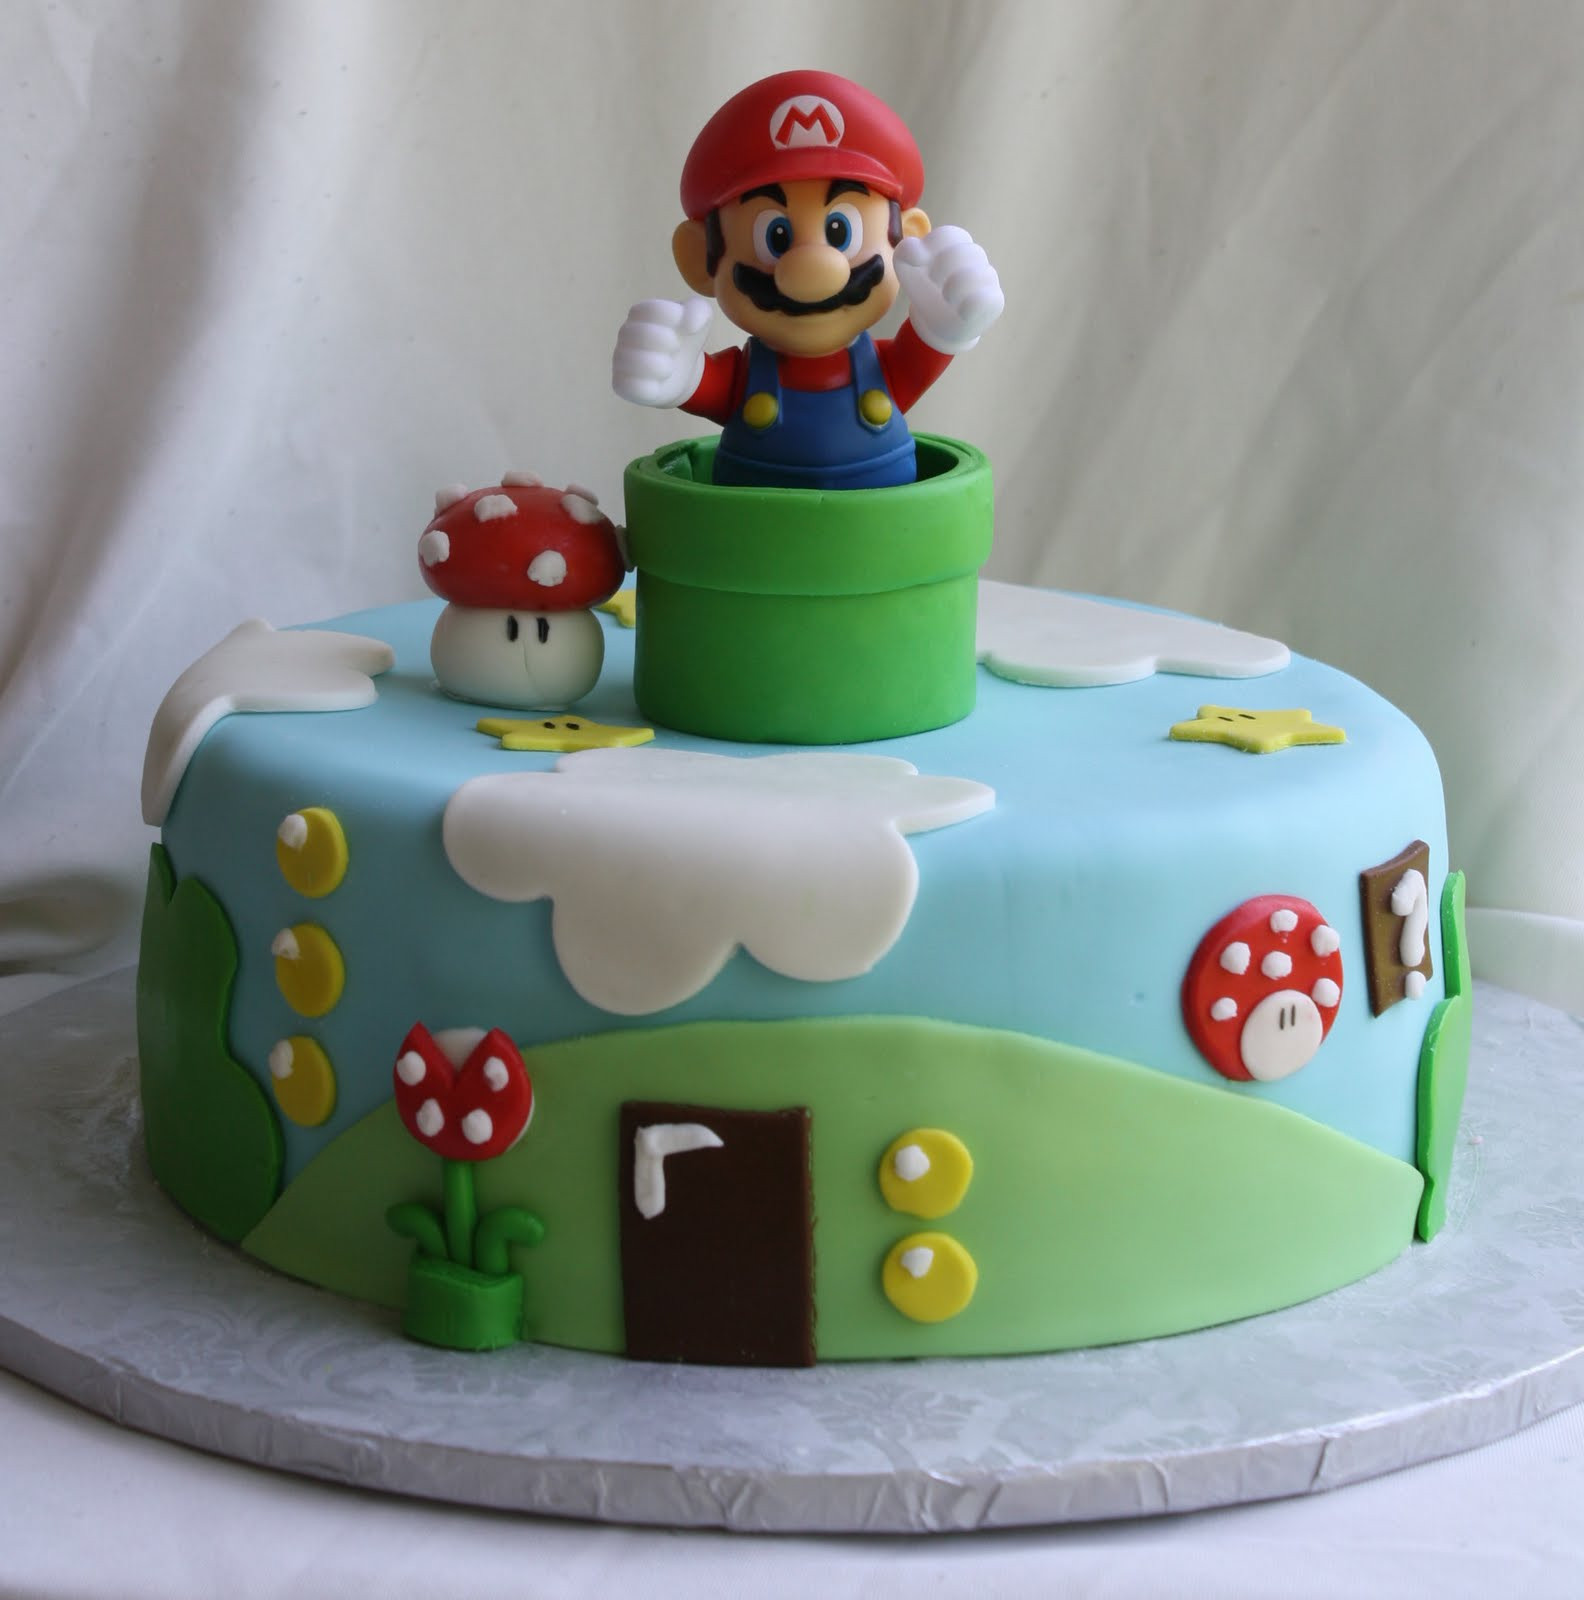 15 Recipes for Great Mario Birthday Cake